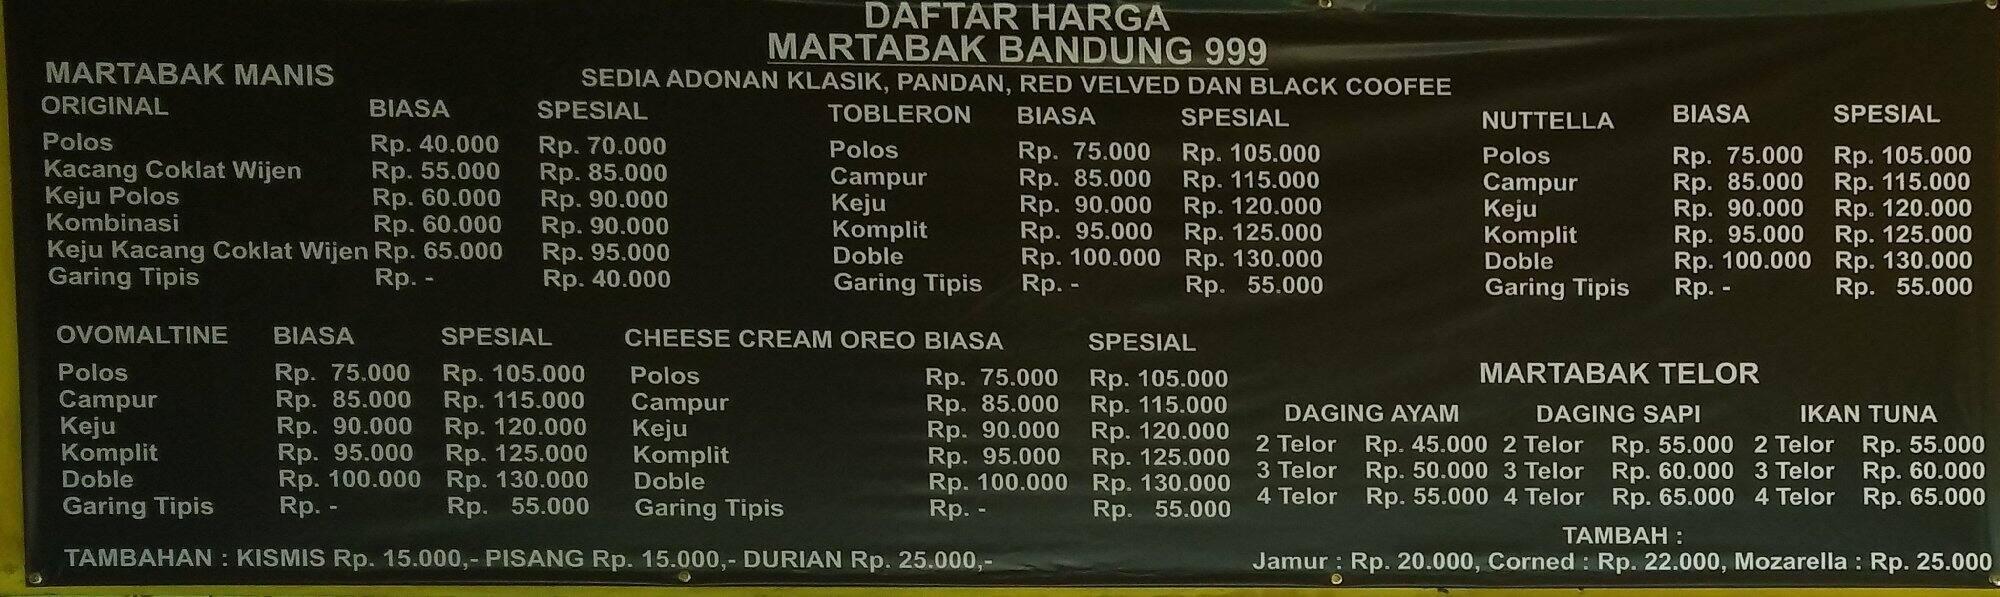 Martabak Bandung 999